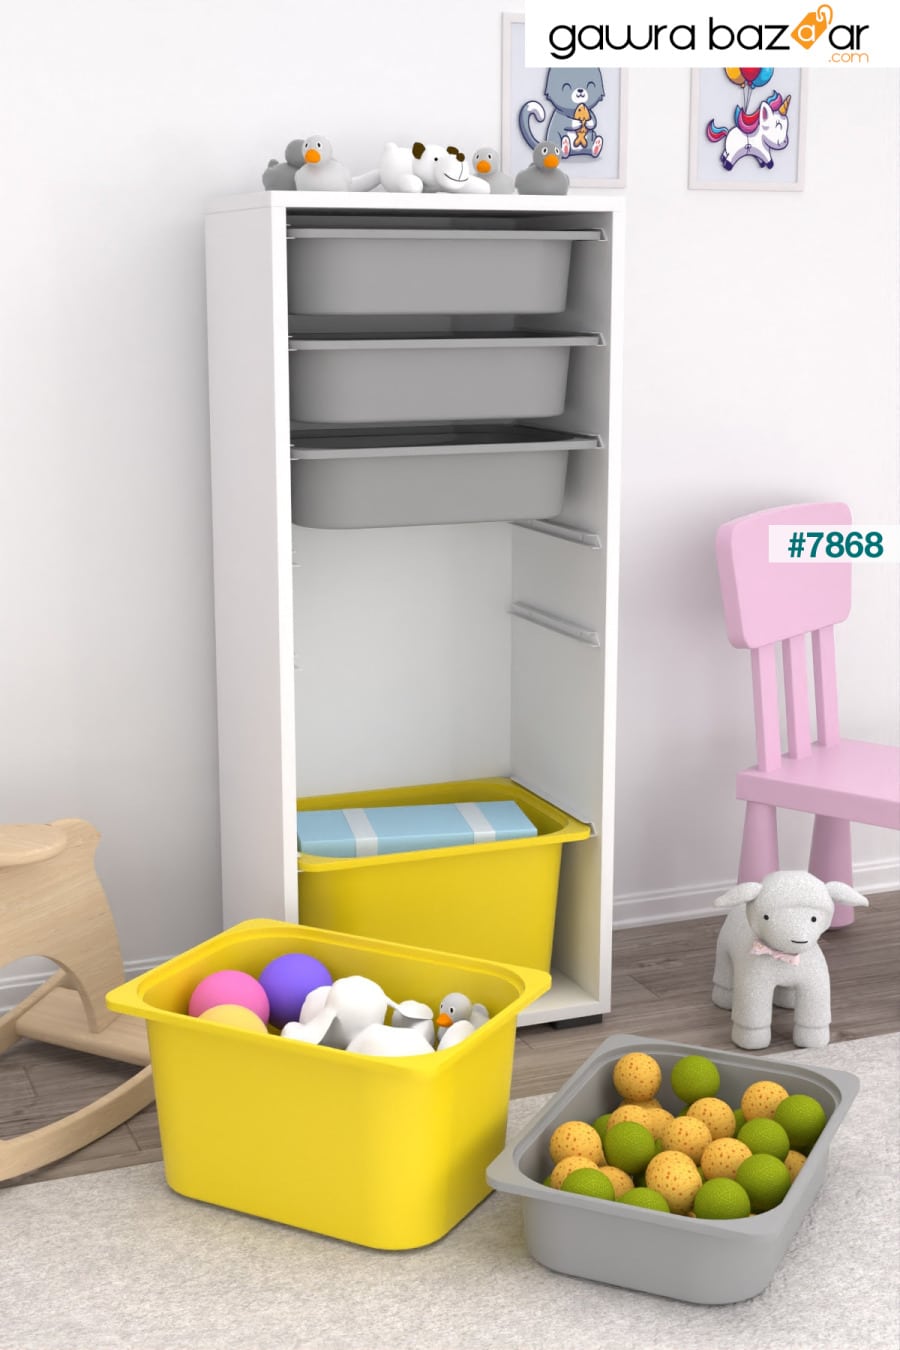 2 Big 4 خزانة ألعاب صغيرة متعددة الأغراض للمطبخ والحمام خزانة ألعاب باللون الأصفر والرمادي Pratico 2